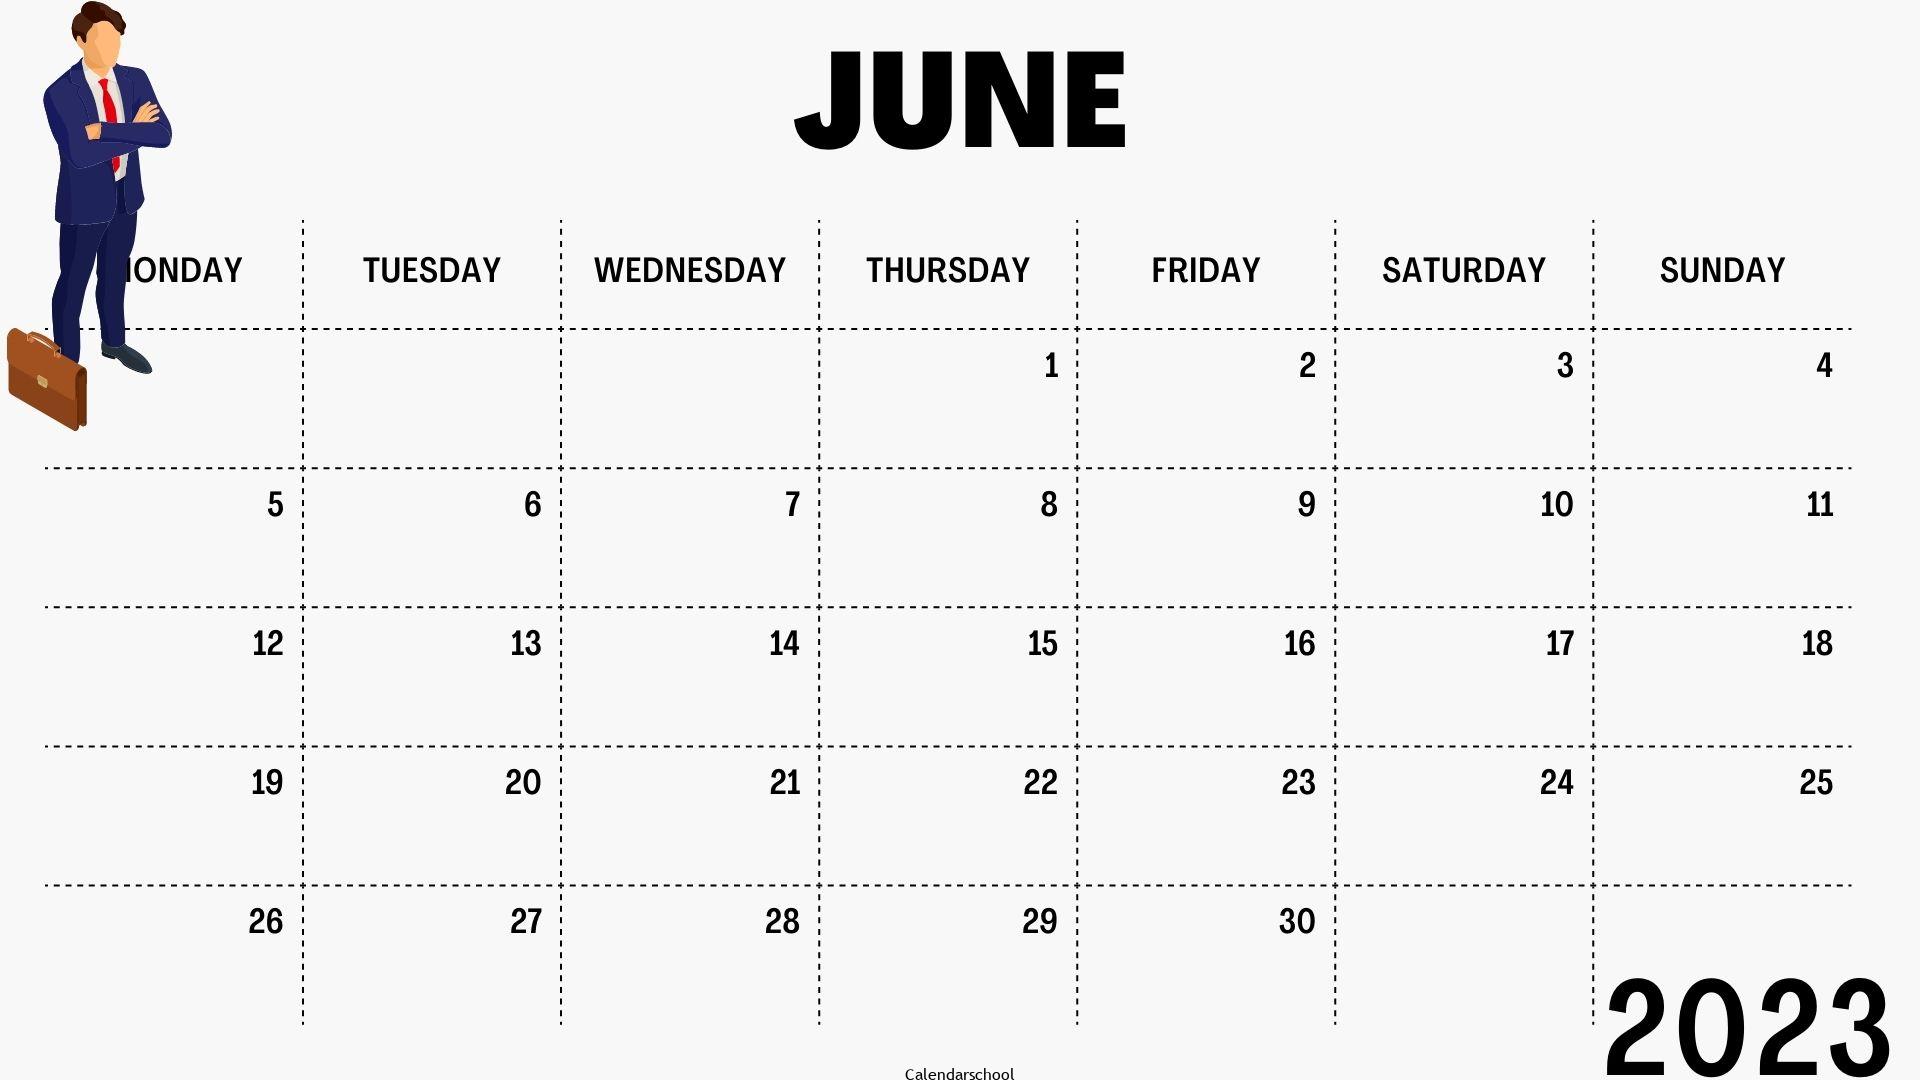 June 2023 Printable Calendar By Week